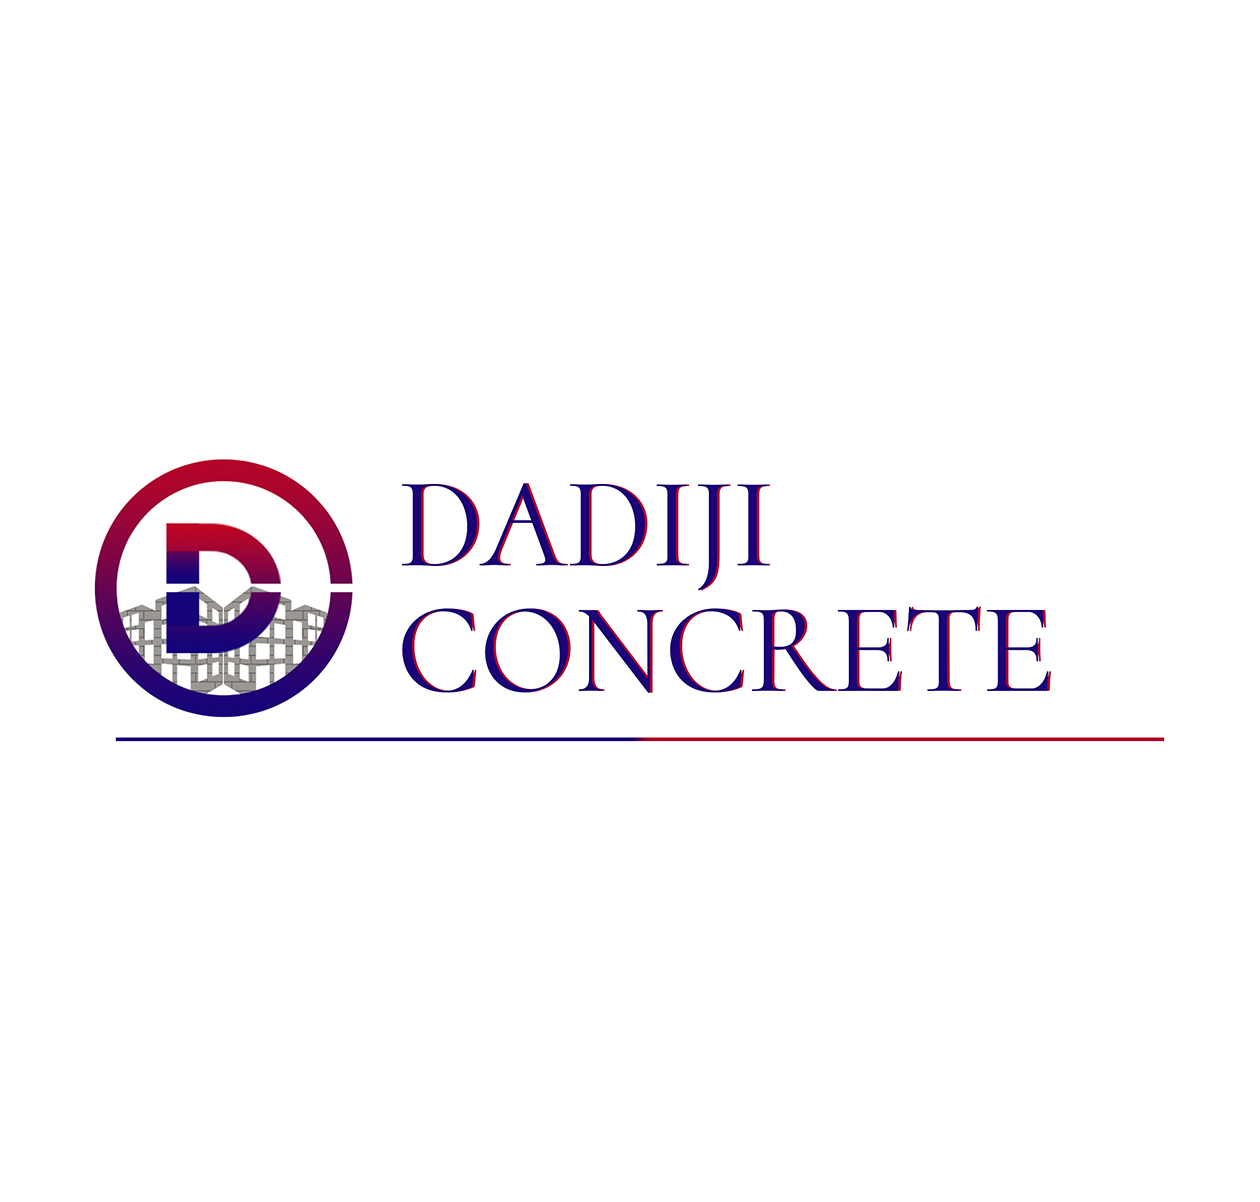 Dadiji Concrete